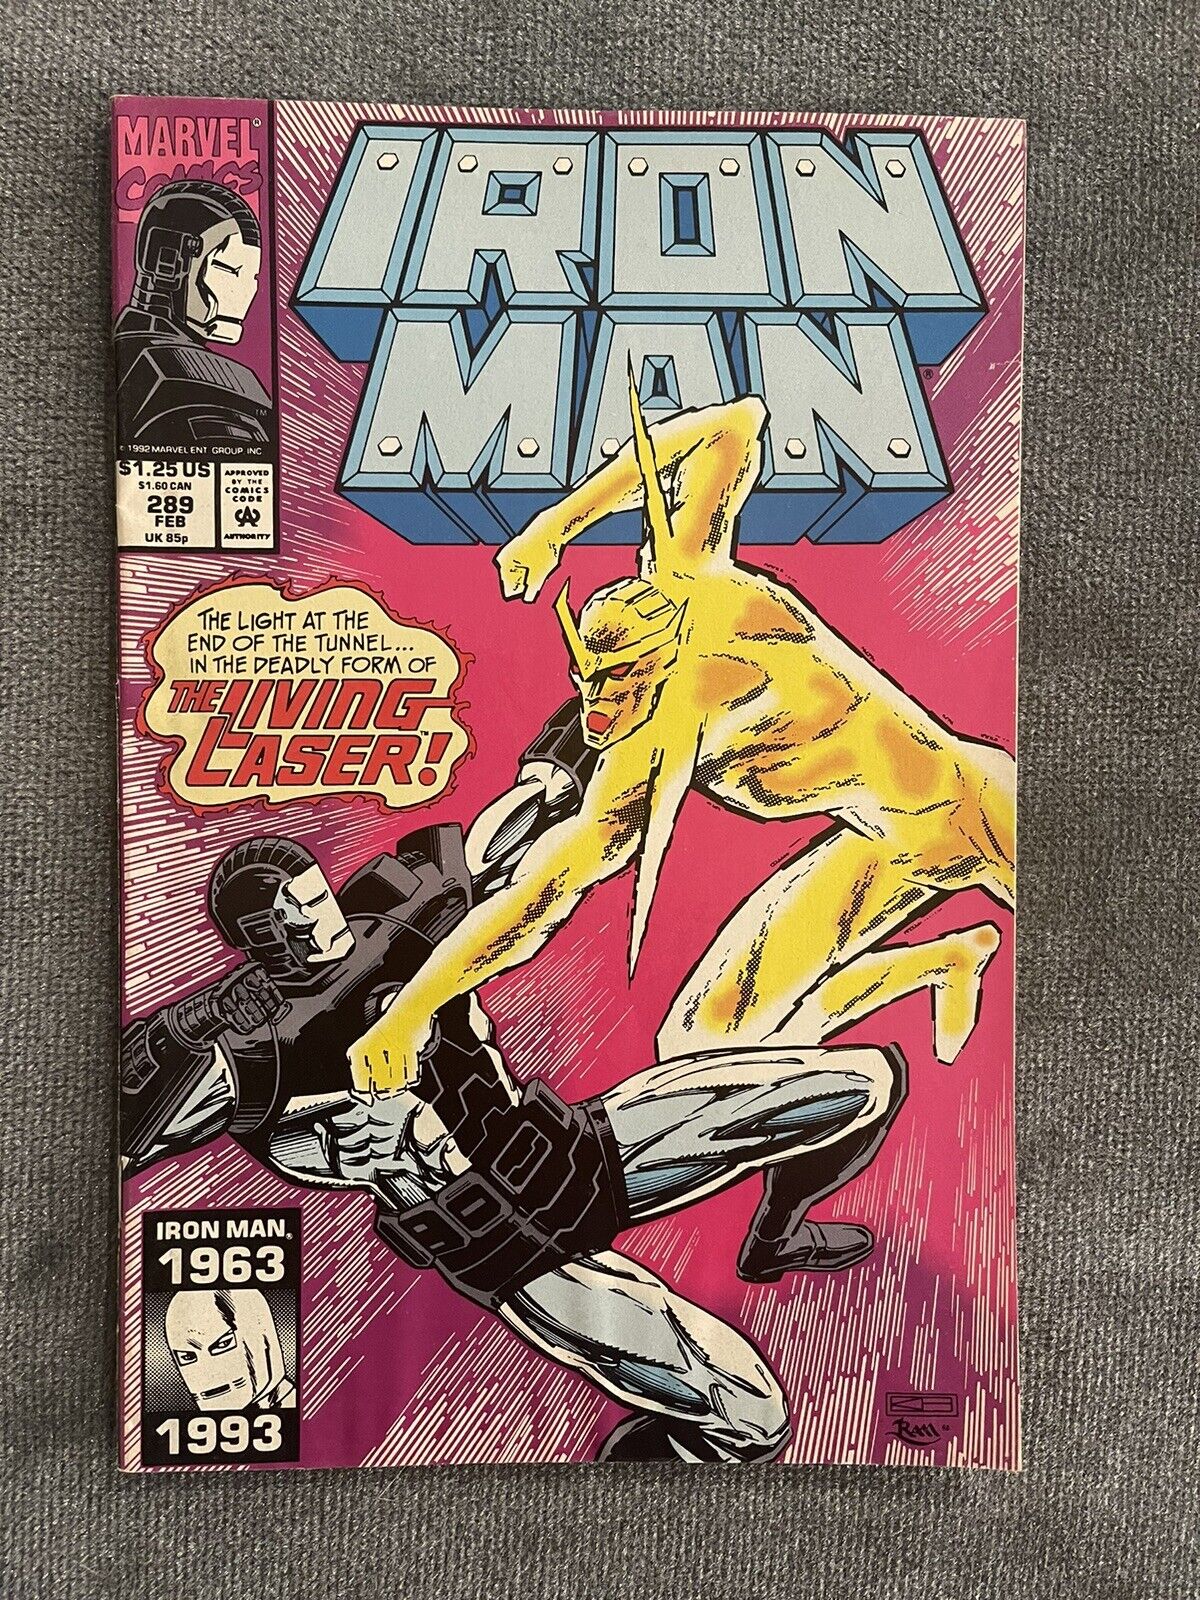 1993 Iron man #289 Stan Lee era Iron man vs Living Laser Modern